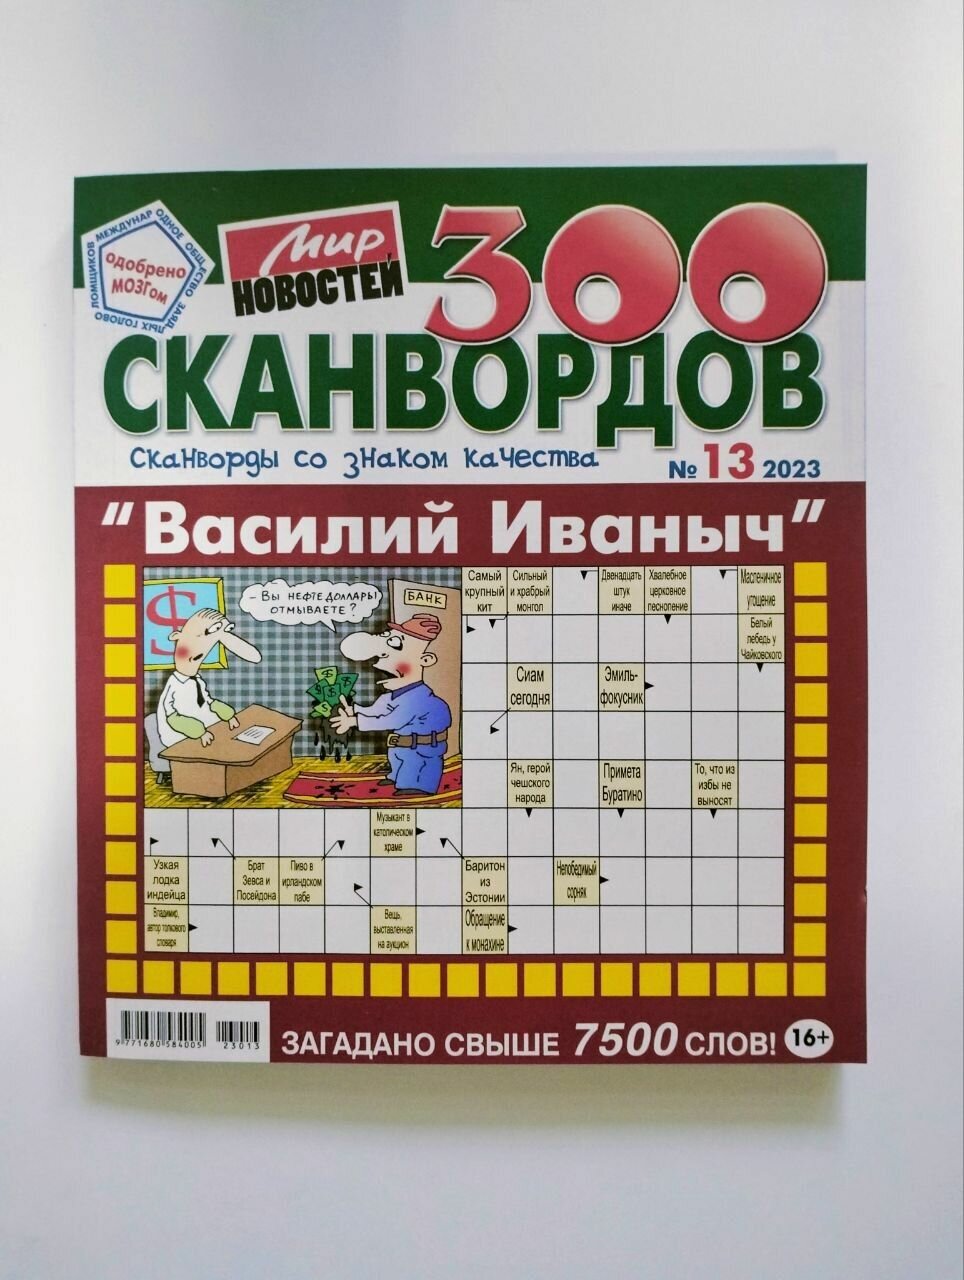 Василий Иваныч 300 Сканвордов 13 2023